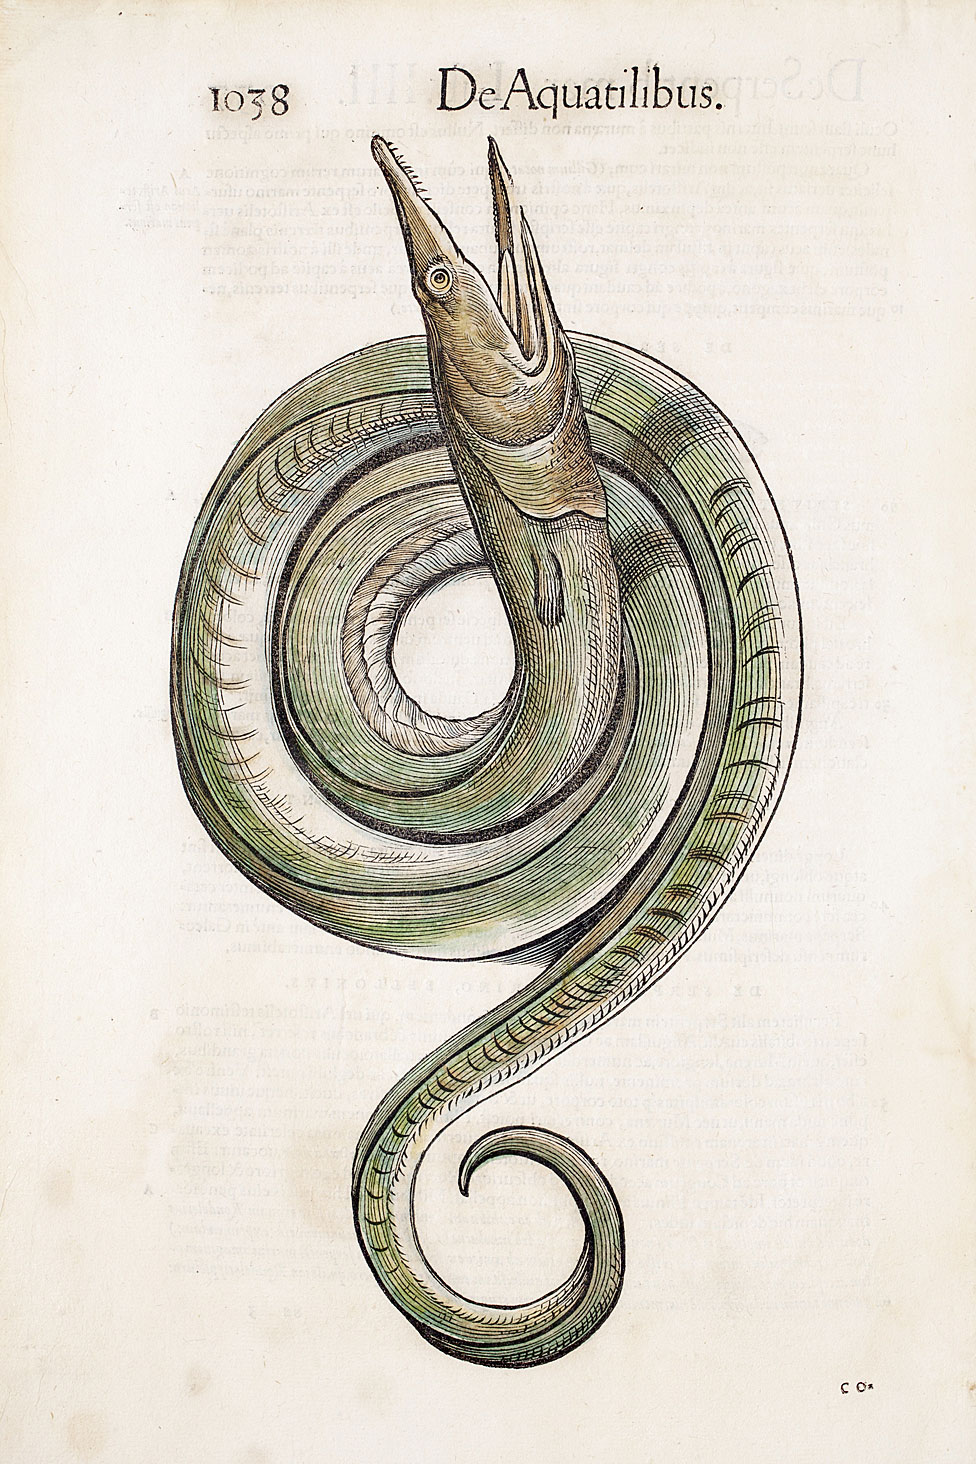 Ilustración de una anguila de la primera edición de "Historiae Animalium" de Conrad Gesner de 1568, la primera enciclopedia de animales.